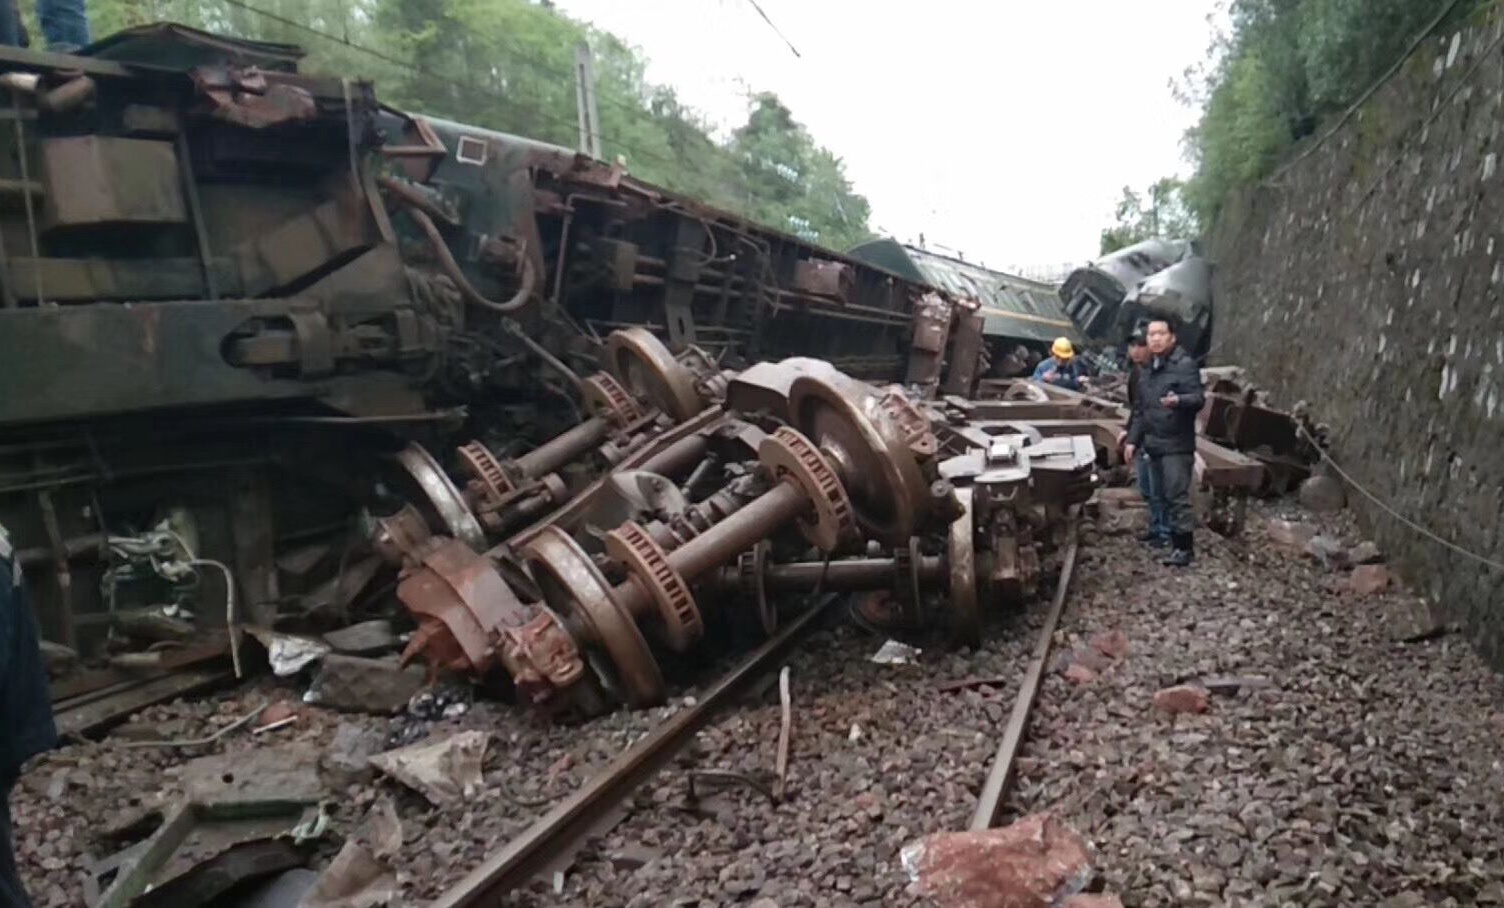 台铁列车出轨事故已致18死190人受伤 现场搜救结束_医院